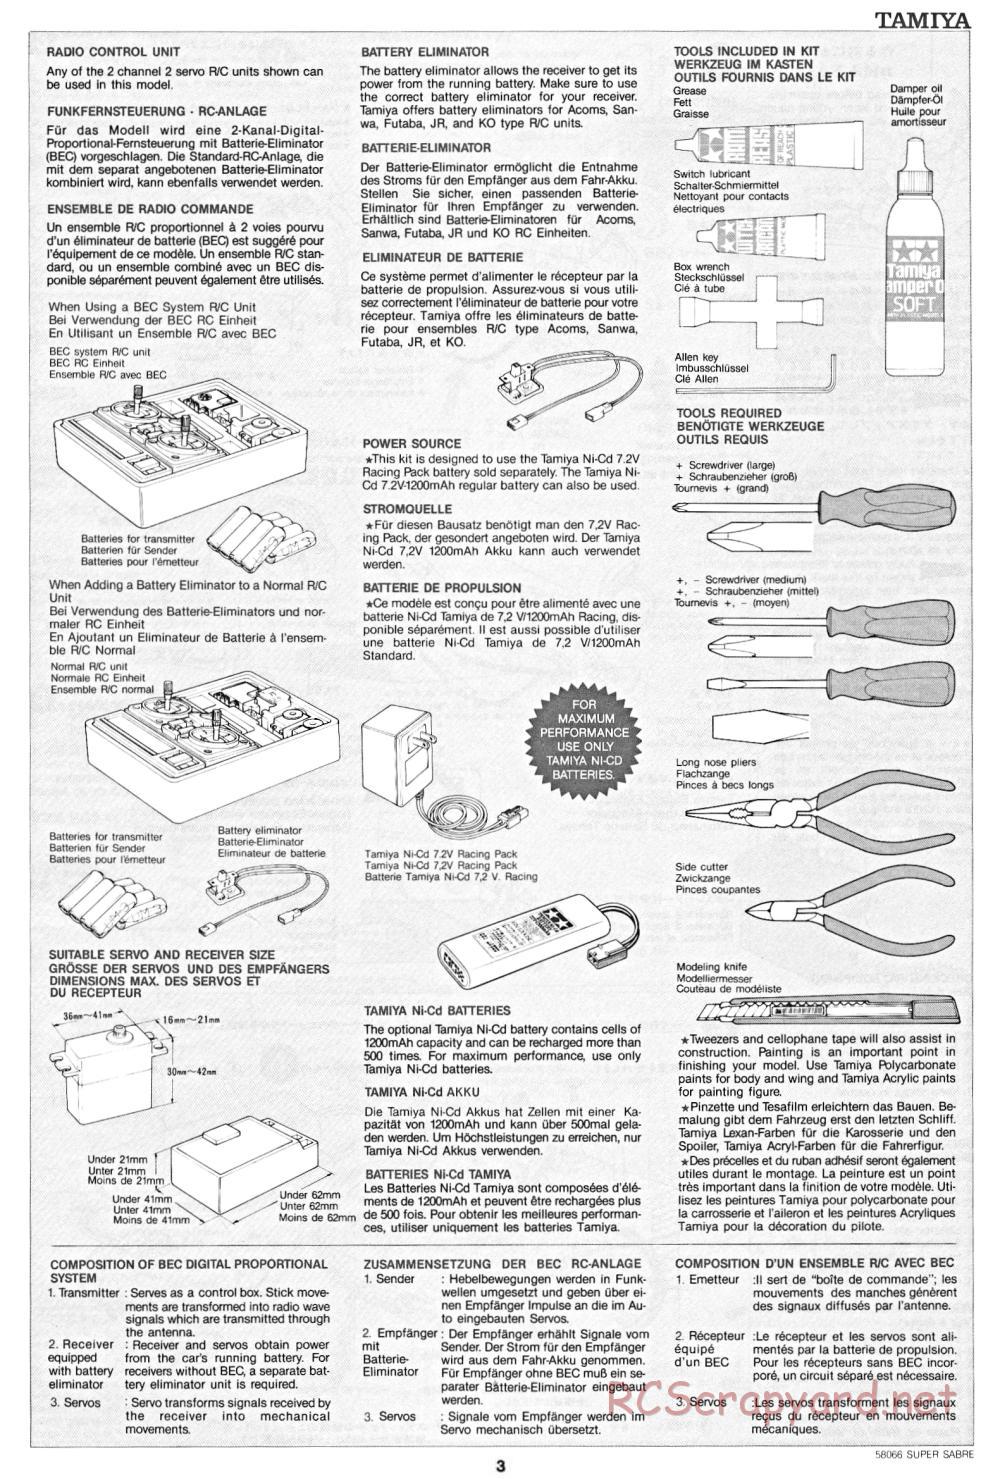 Tamiya - Super Sabre - 58066 - Manual - Page 3